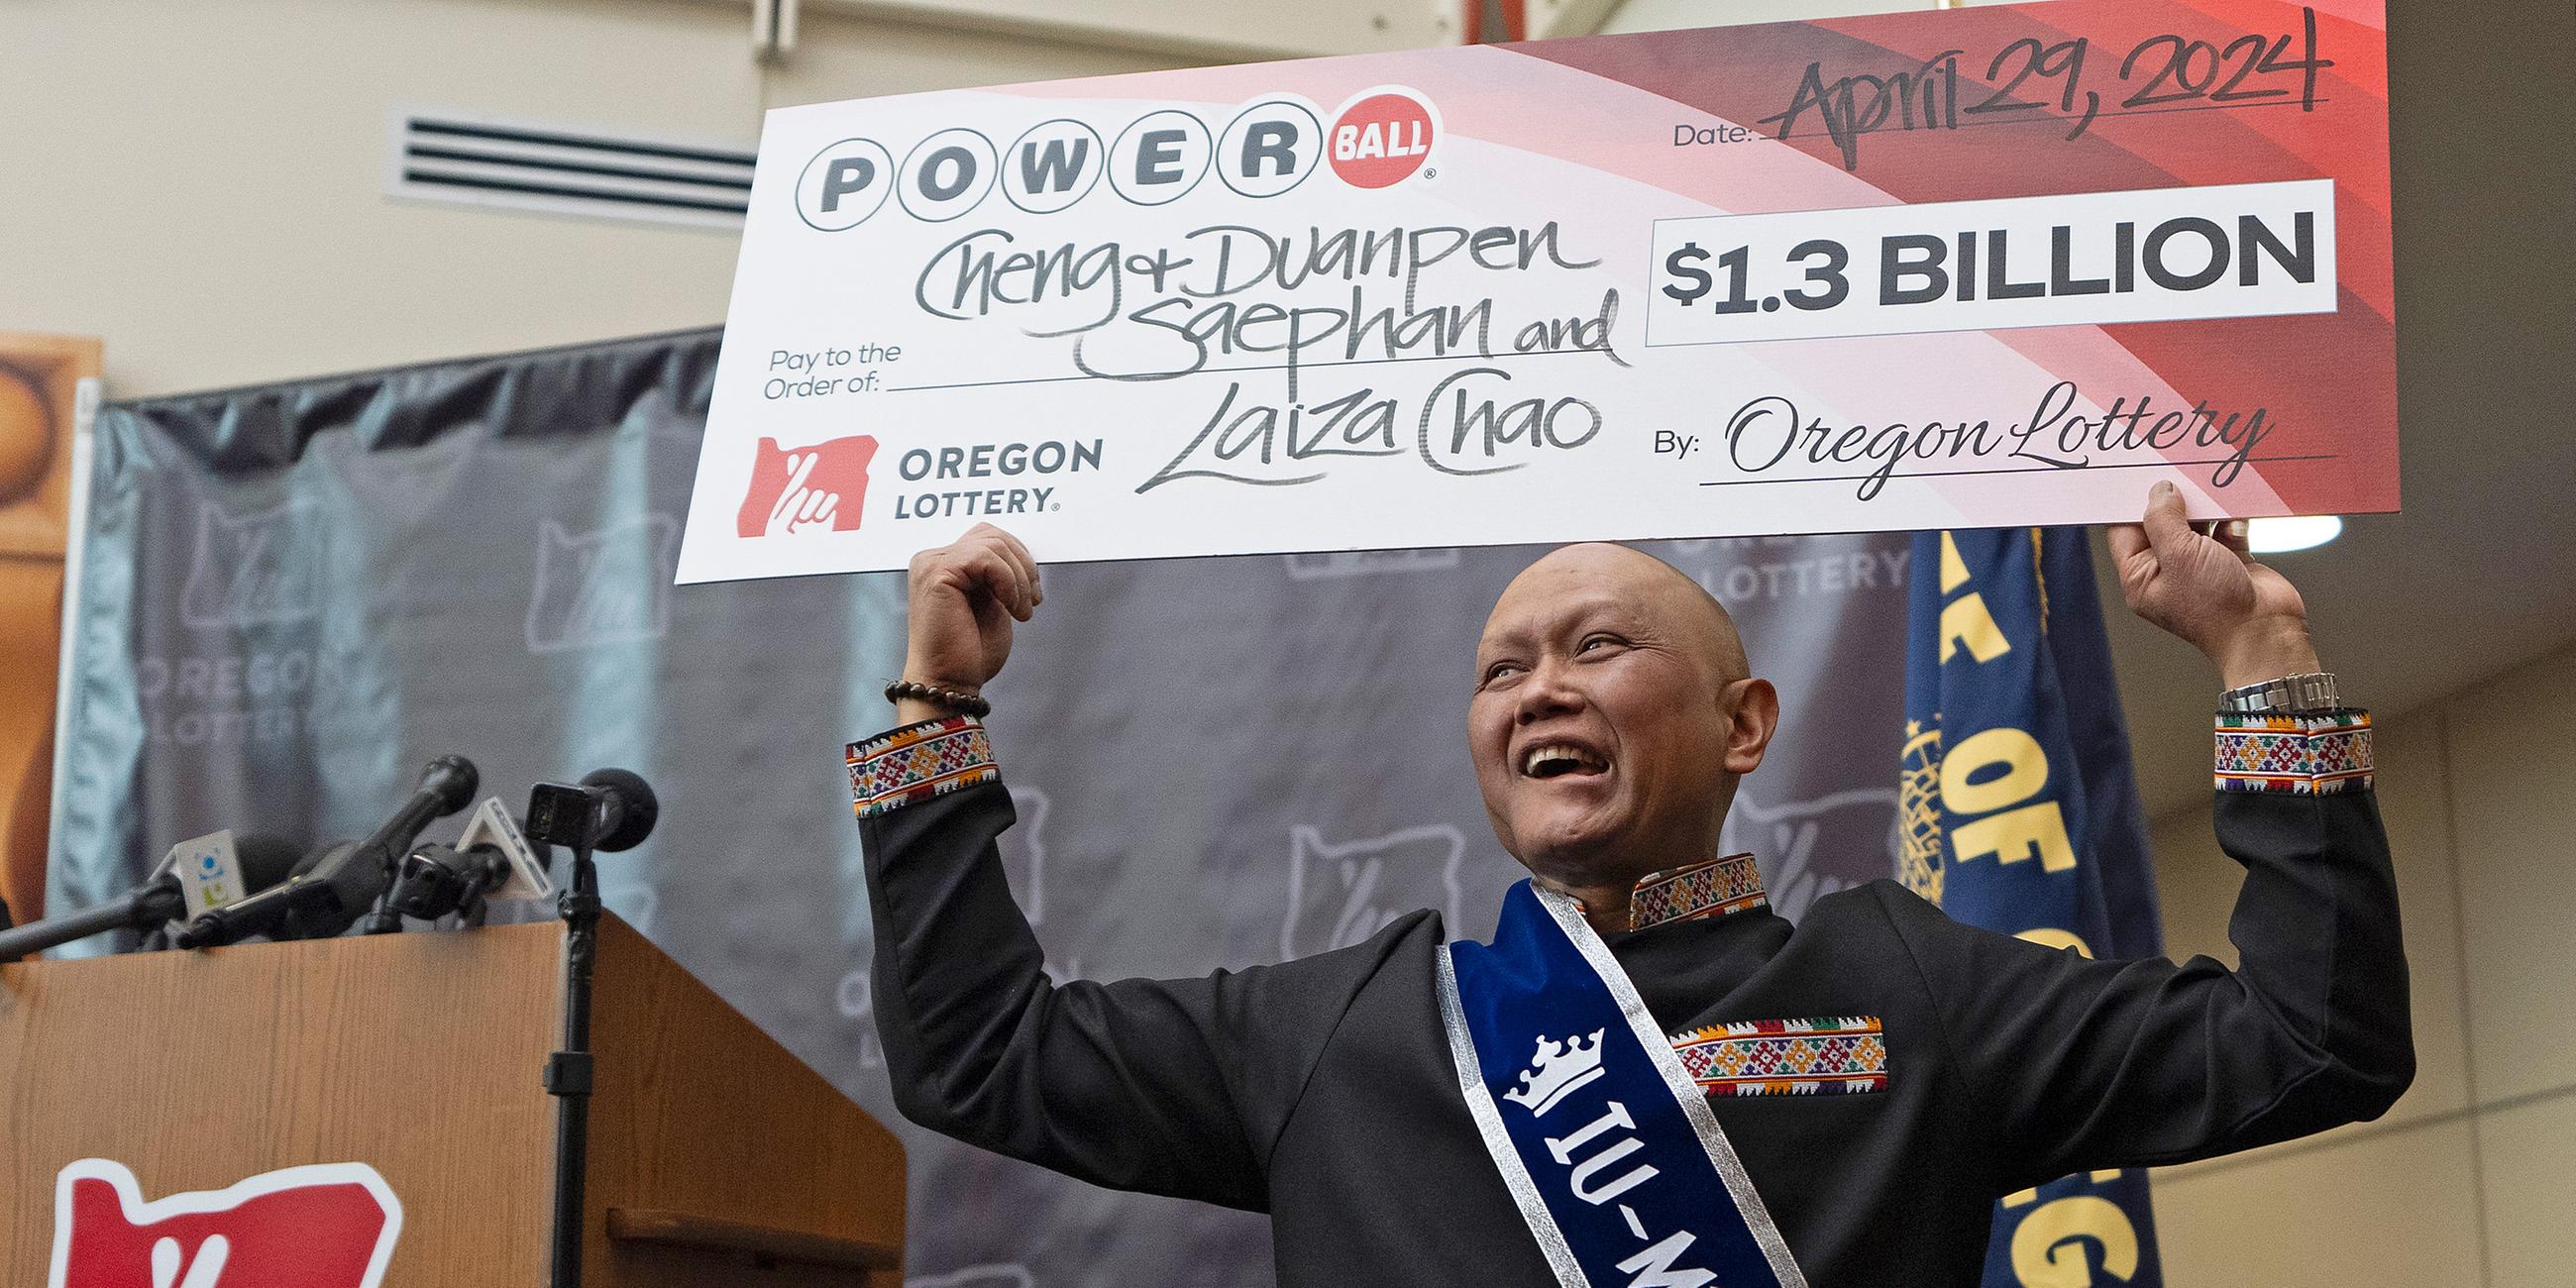 Gewinner des Powerball-Jackpots, Cheng „Charlie“ Saephan, aufgenommen am 29.04.2024 in Salem (USA)